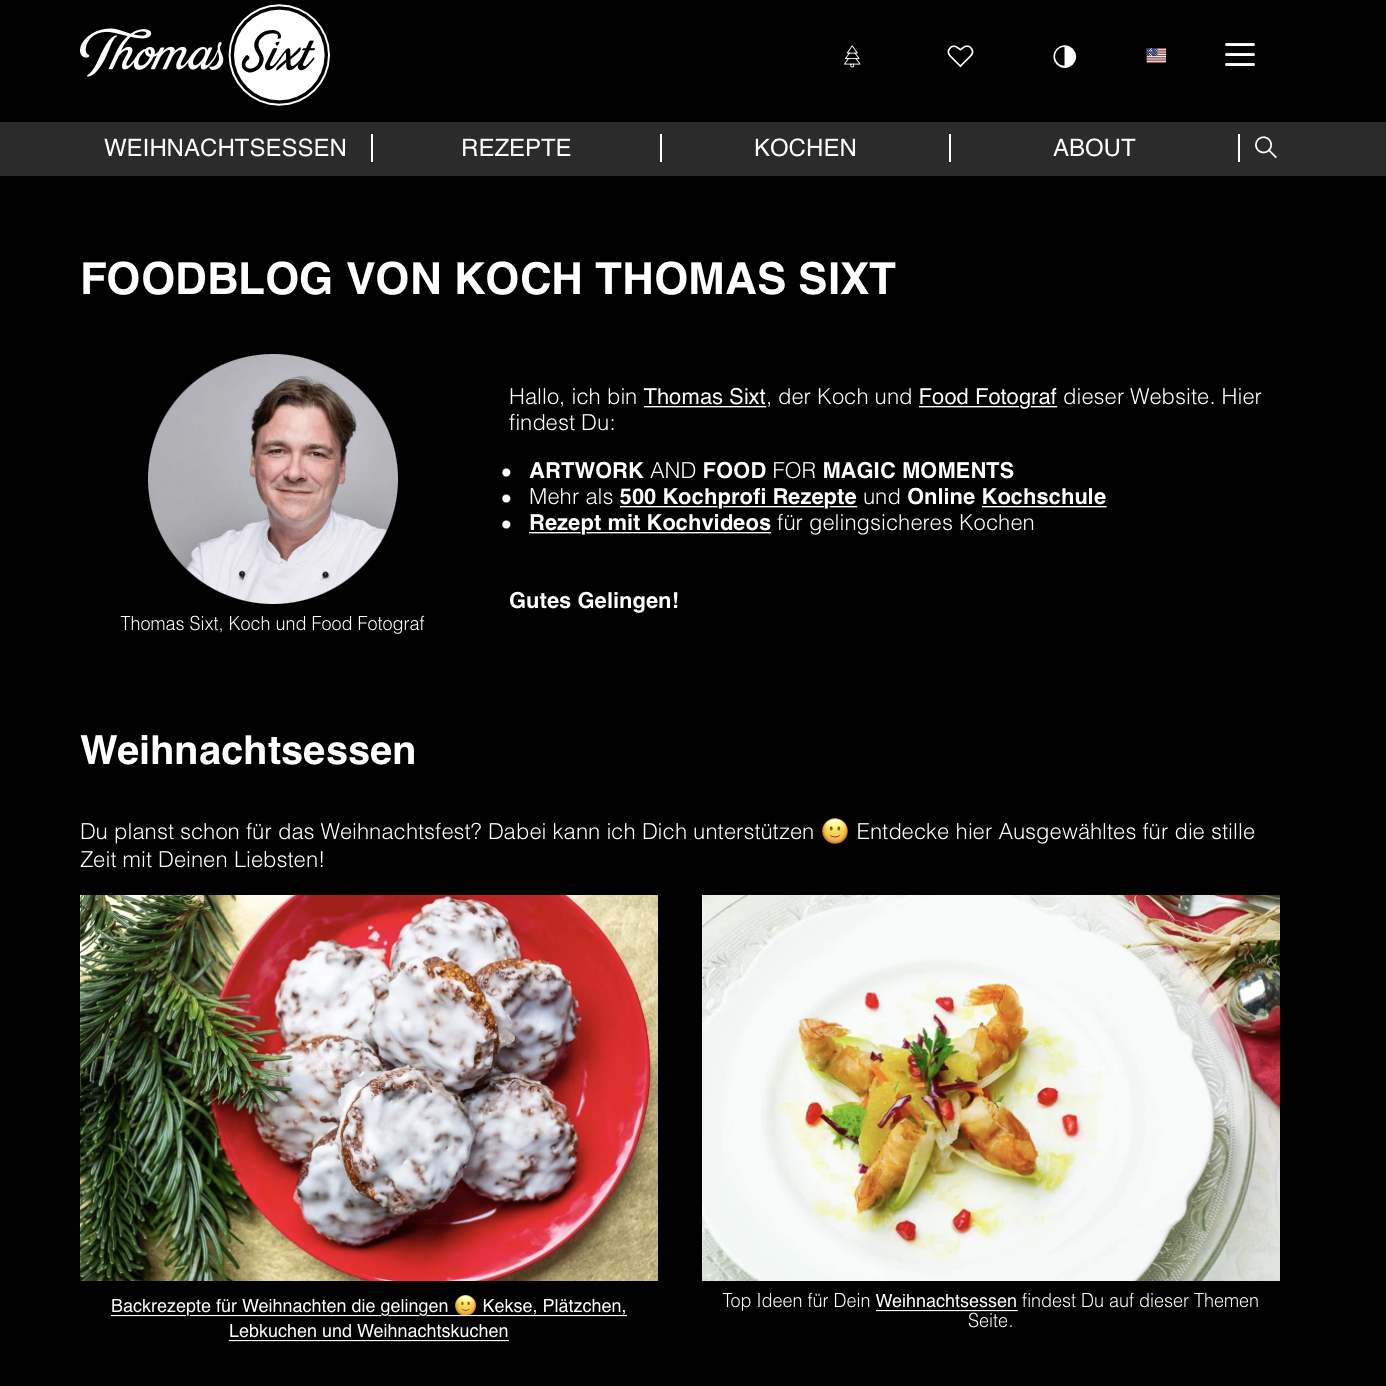 thomas-sixt-kochprofi-foodblog.png